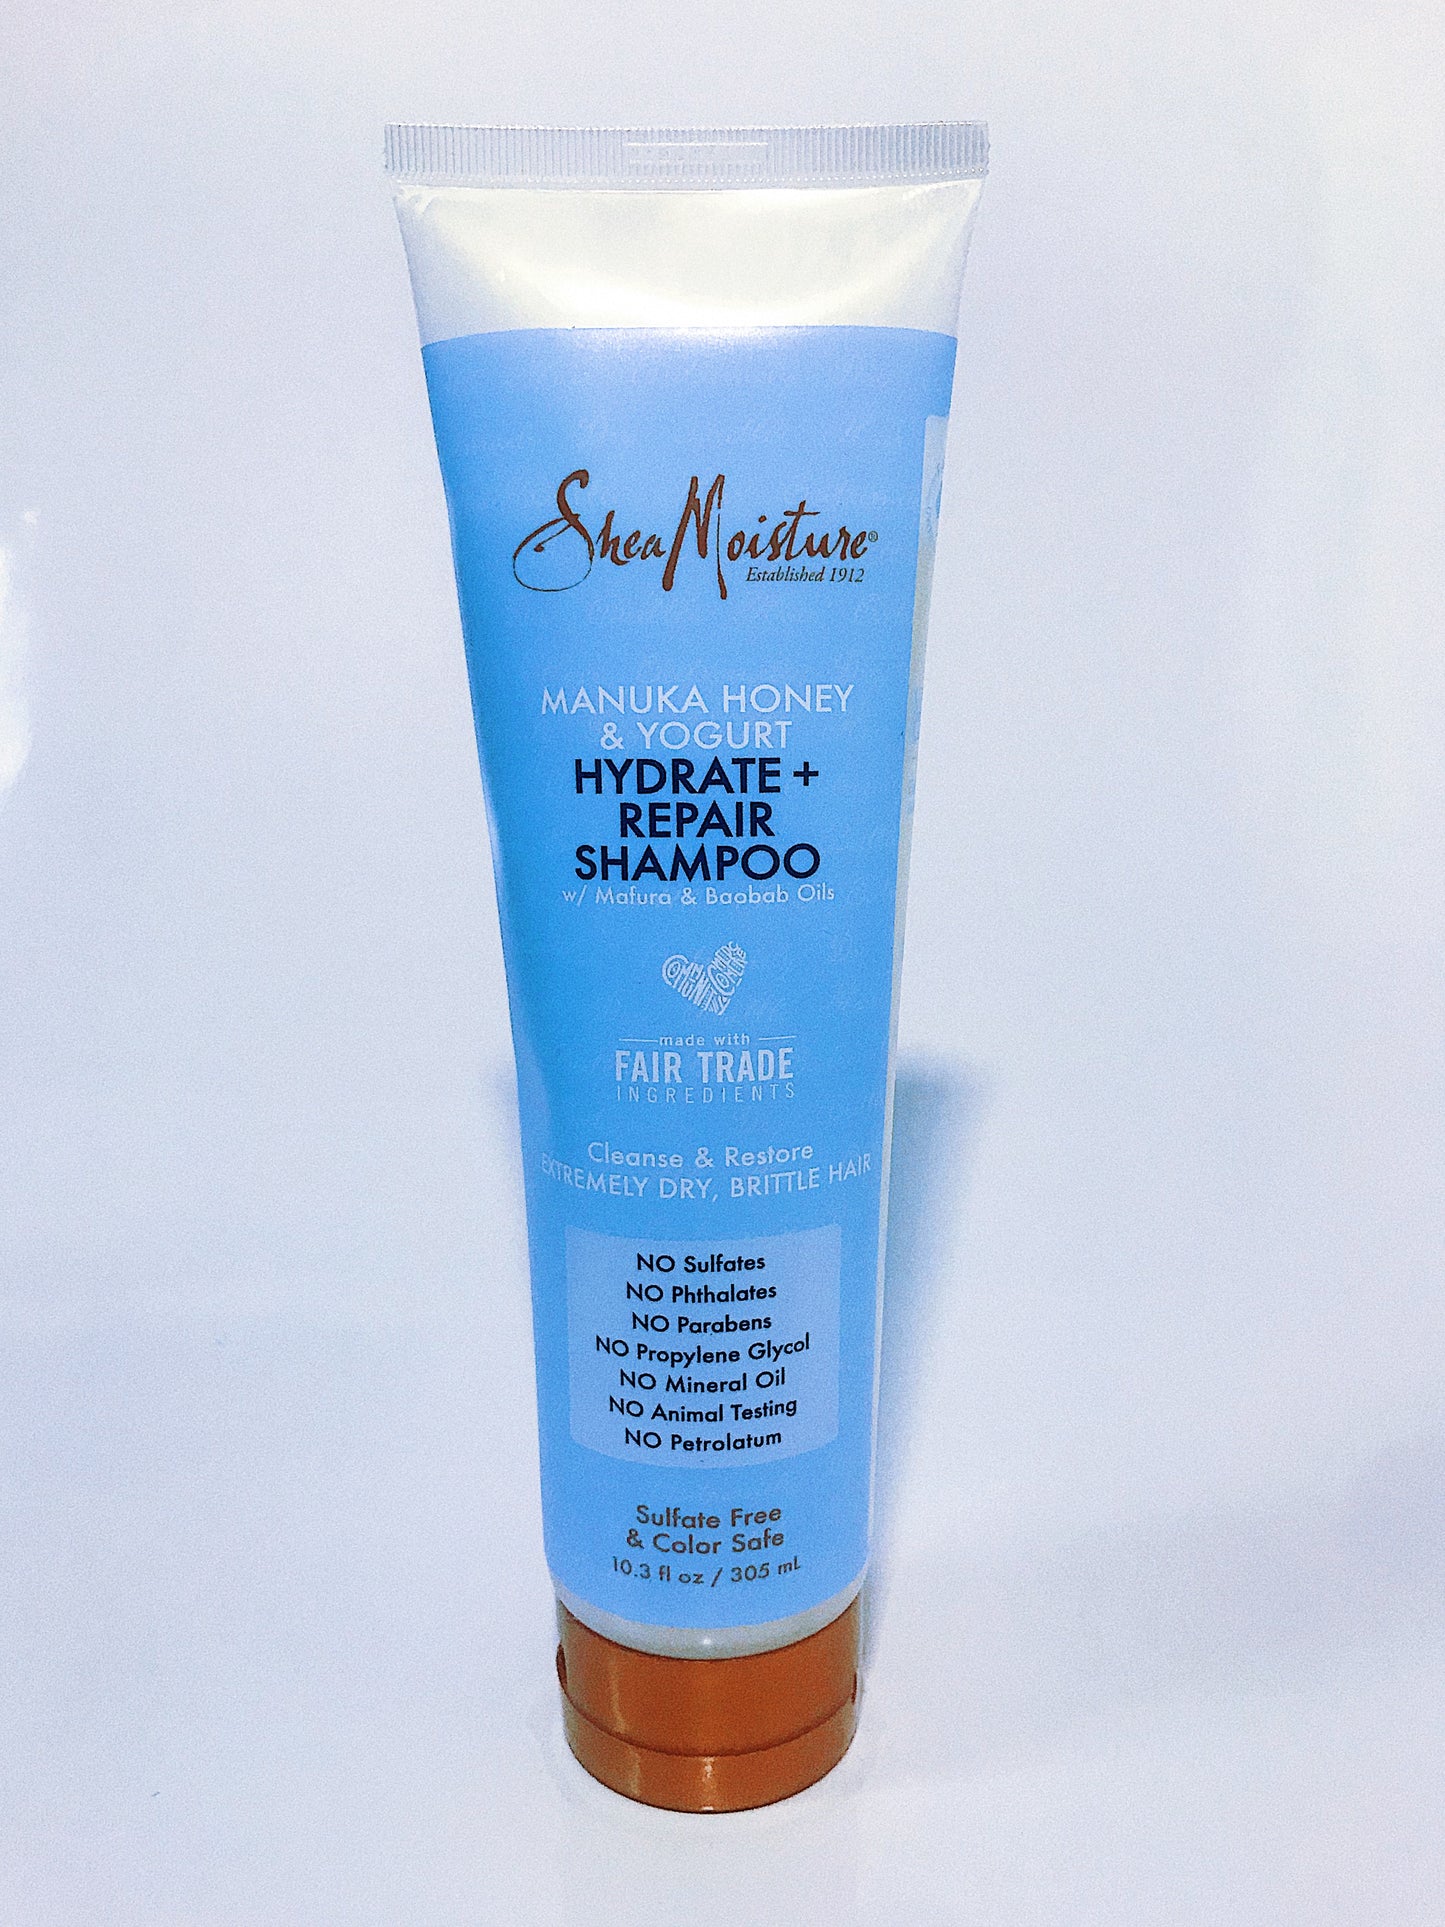 Shea moisture Manuka Honey & Yogurt Hydrate + Repair Shampoo